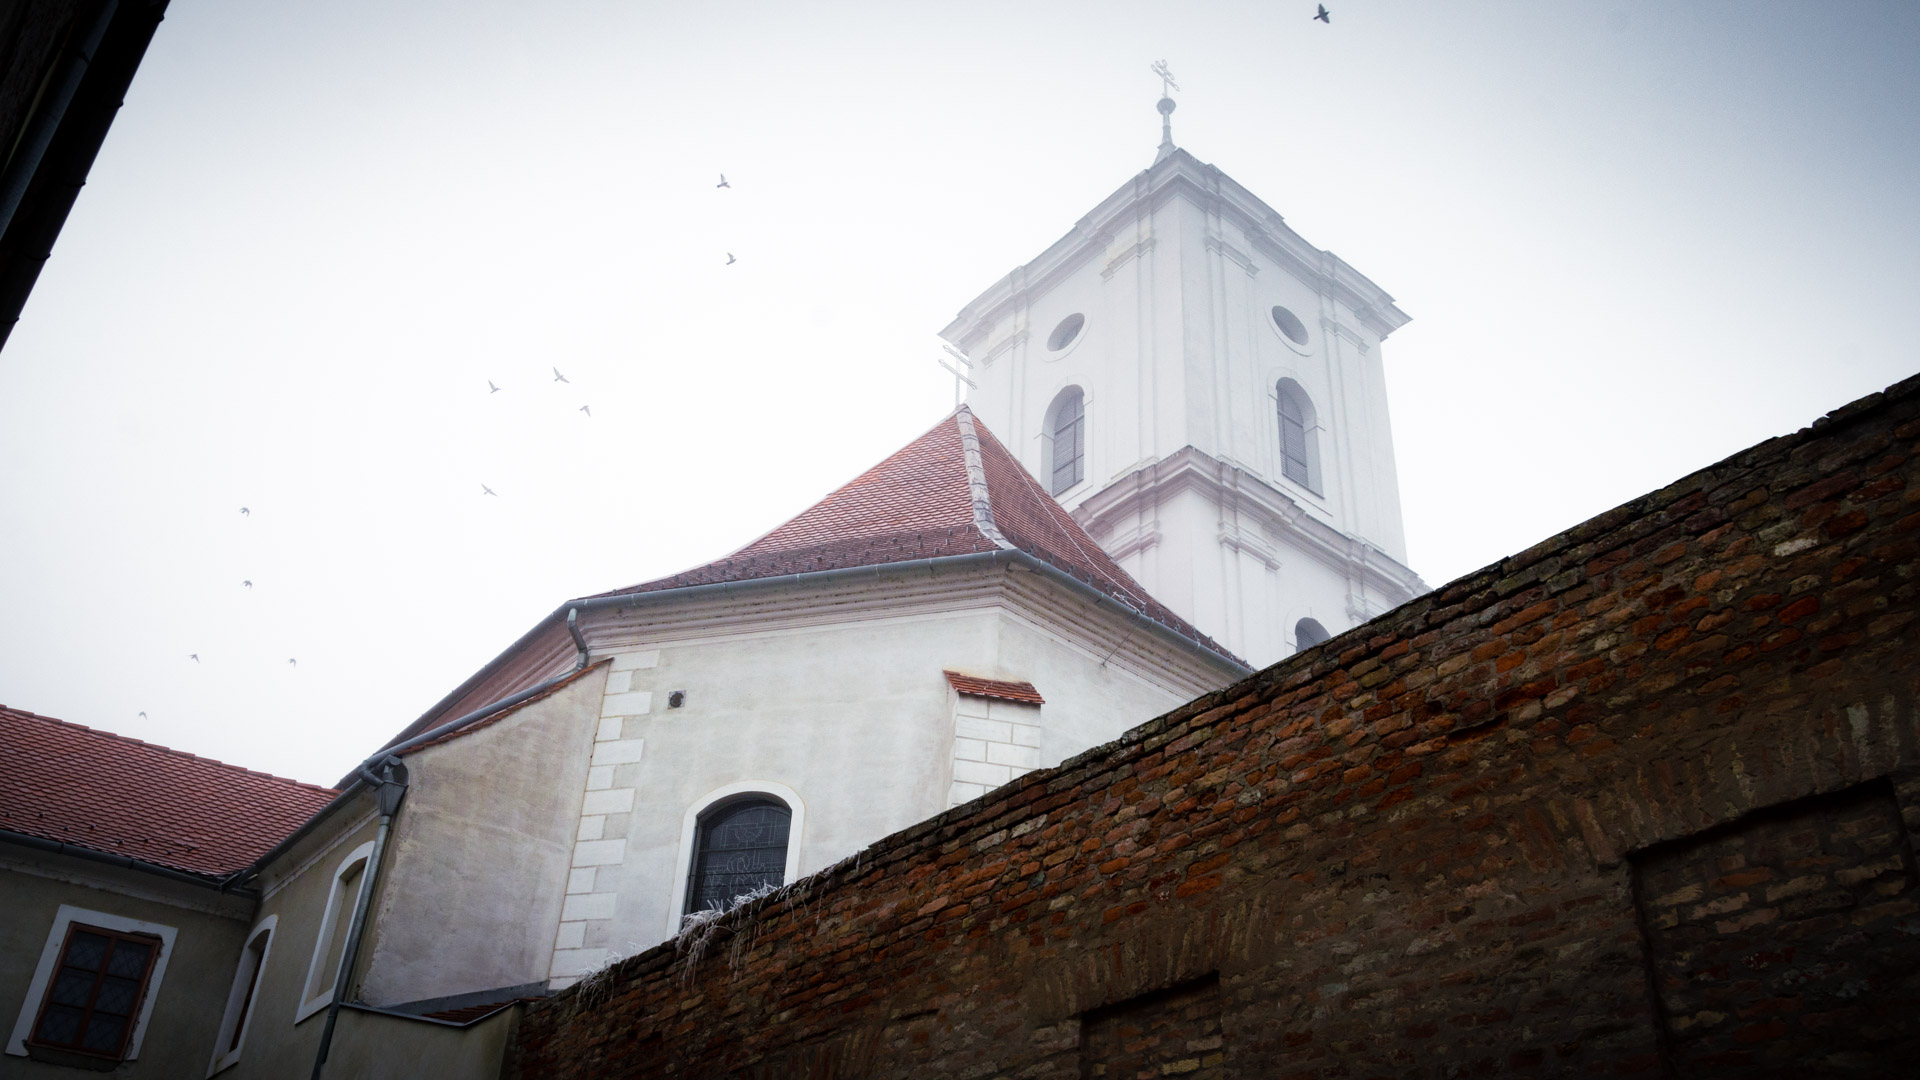 Franjevacki+samostan+i+crkva+sv+antuna+4